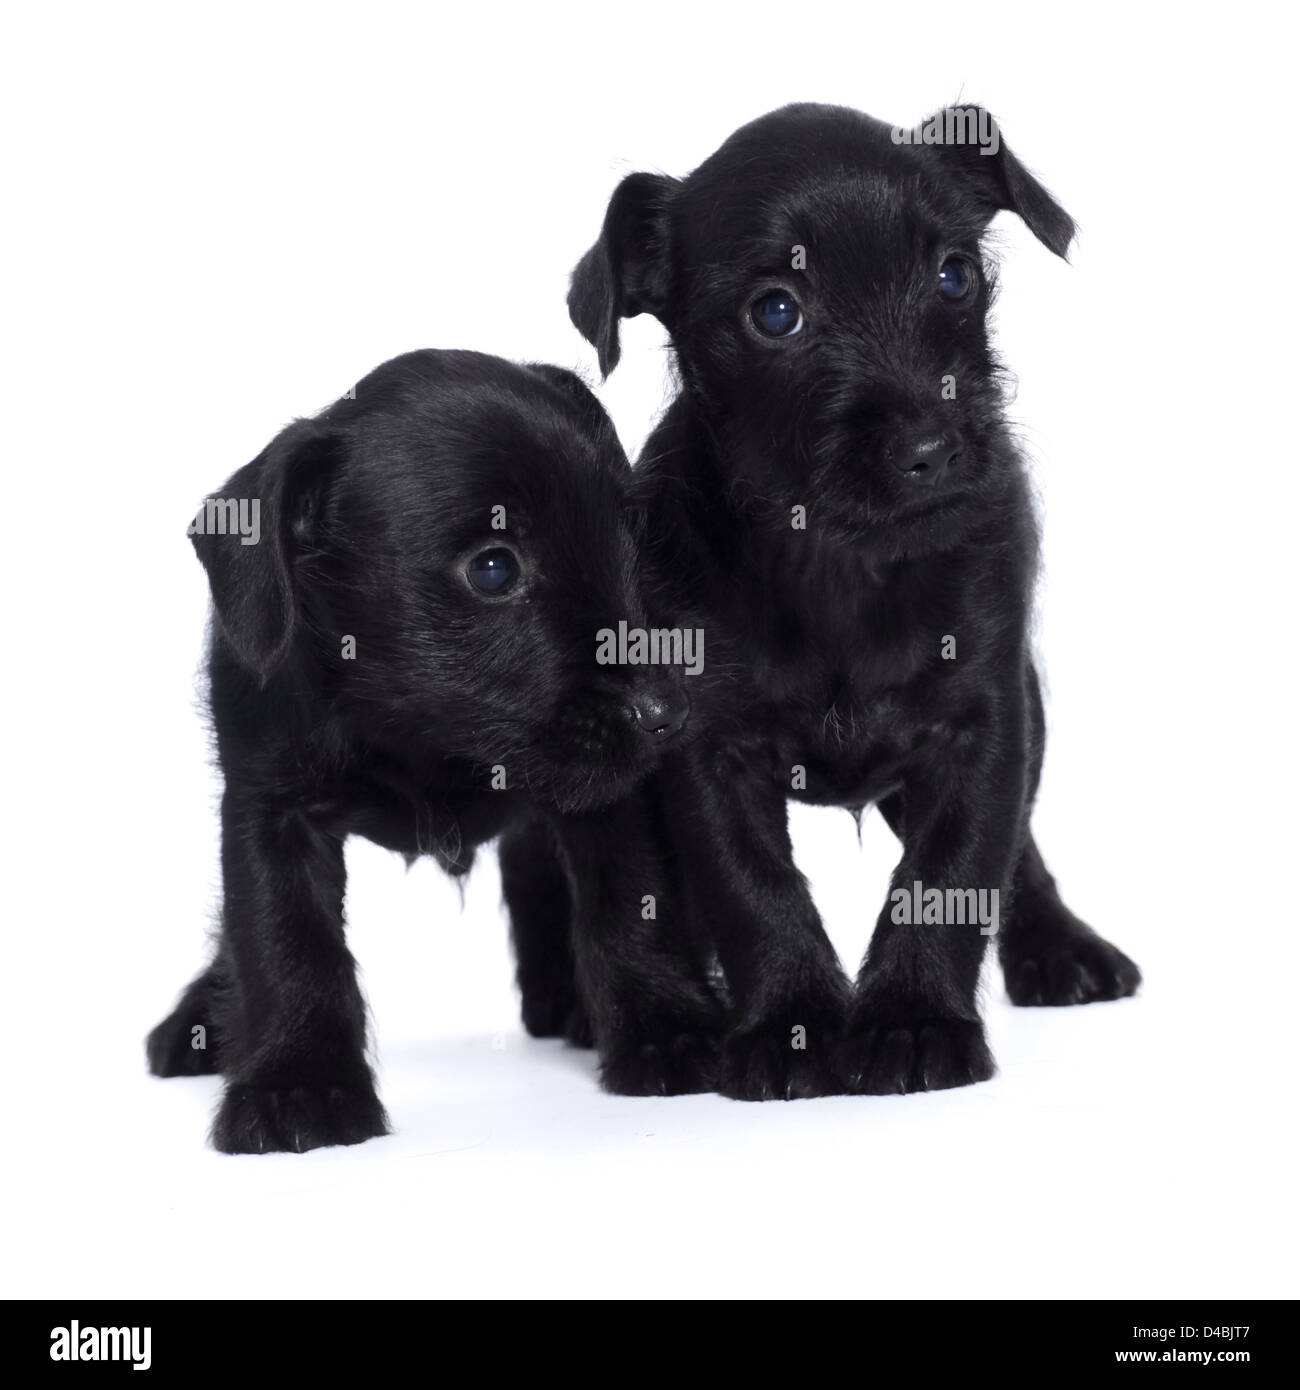 https://c8.alamy.com/comp/D4BJT7/two-little-black-puppies-D4BJT7.jpg